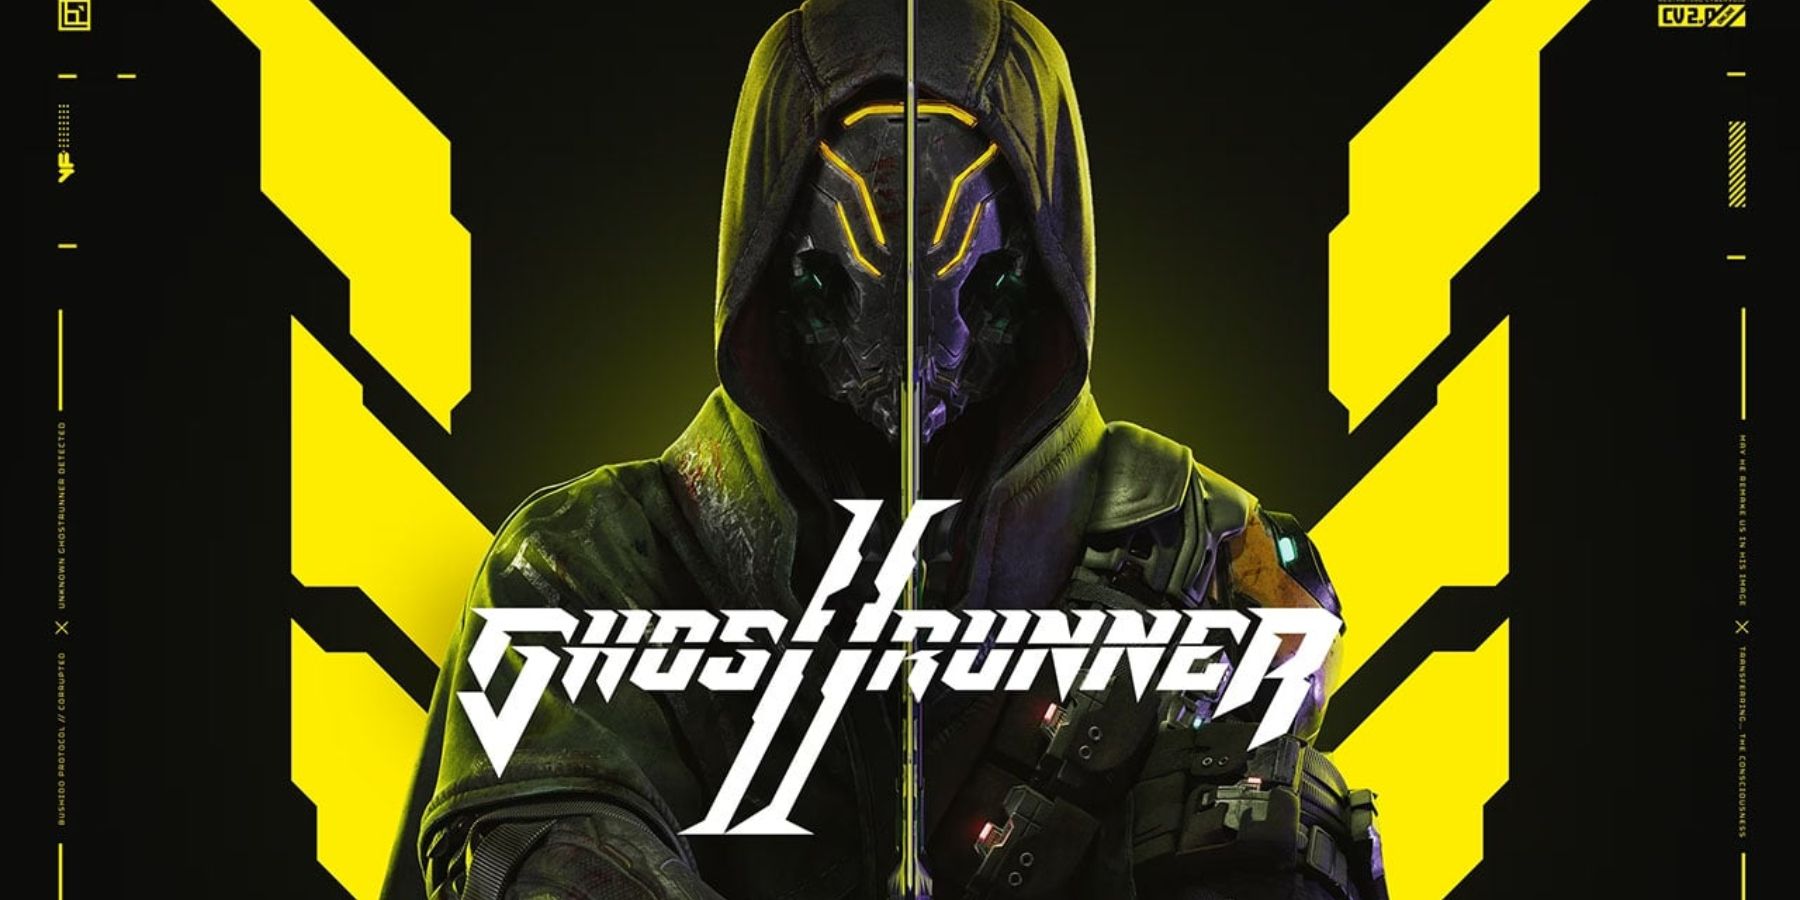 ghostrunner 2 cover